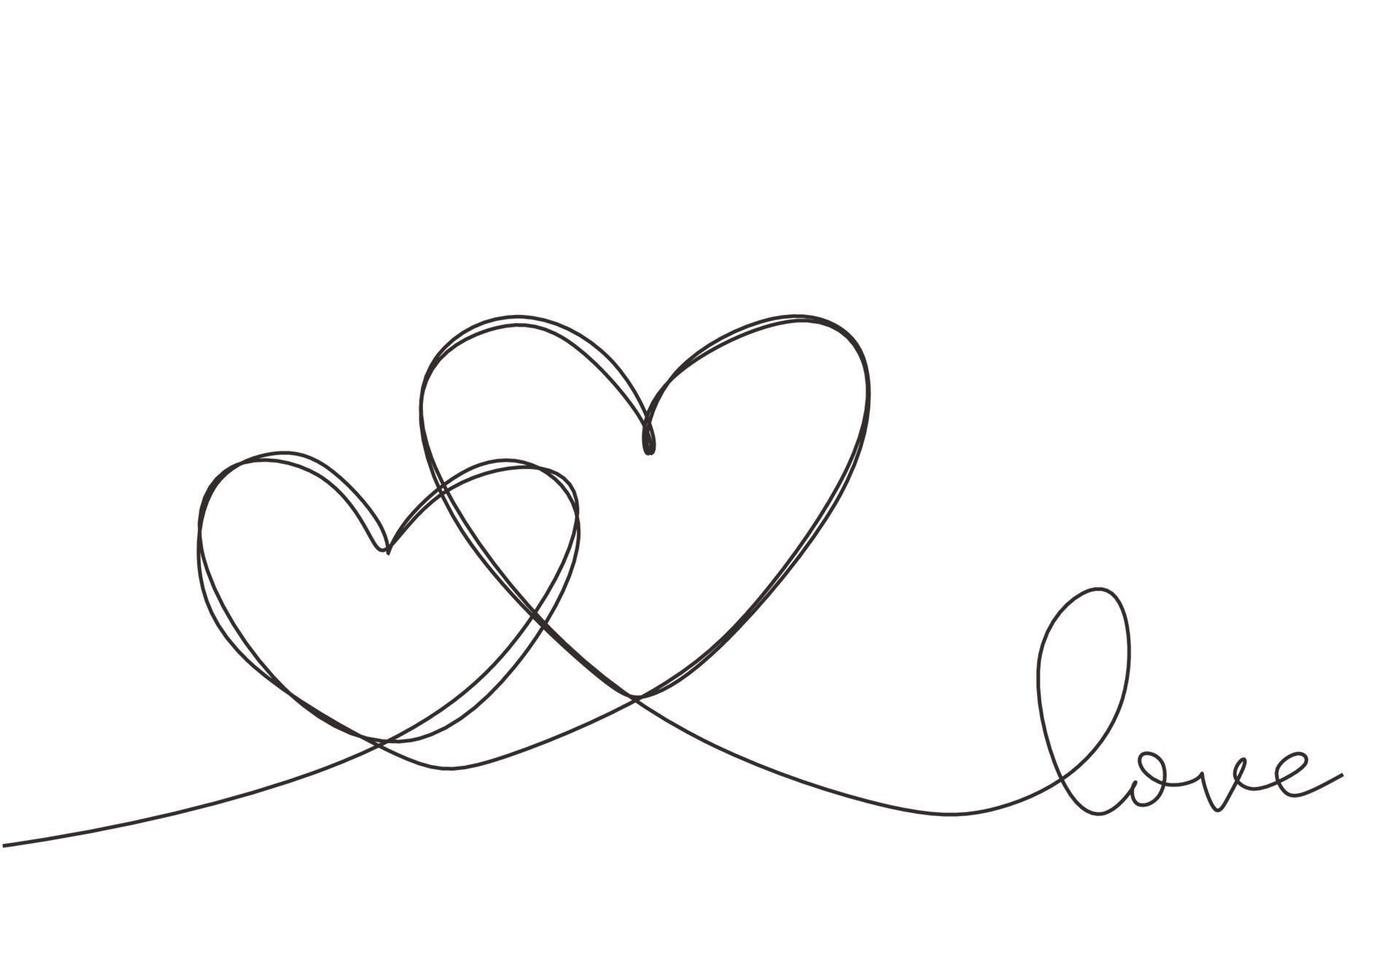 ligne continue dessinant deux coeurs, illustration minimaliste vectorielle noir et blanc du concept d'amour. vecteur